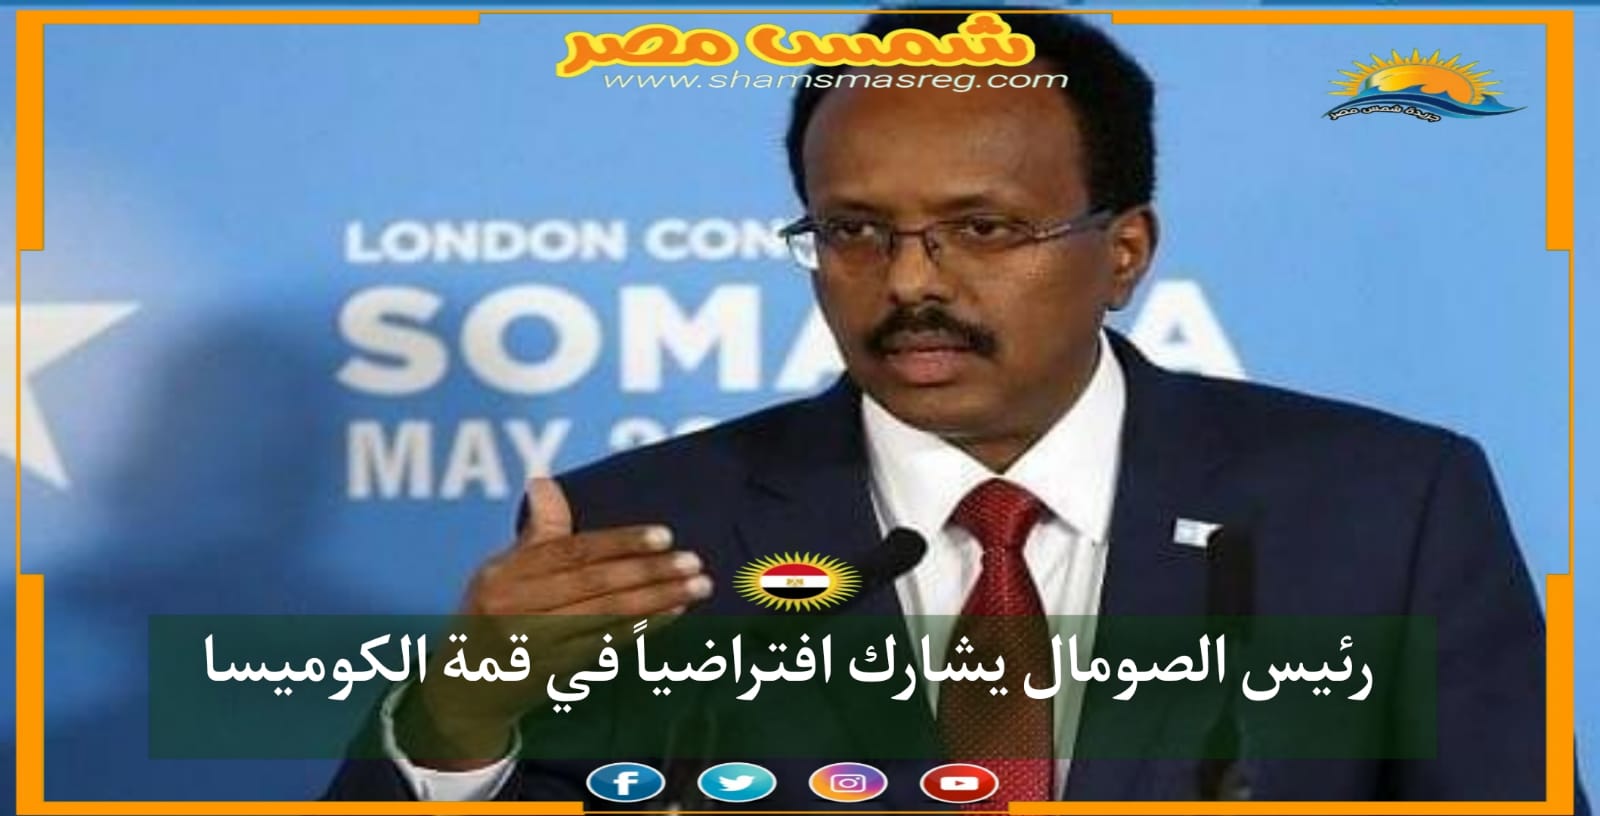 |شمس مصر| ... رئيس الصومال يشارك افتراضياً في قمة الكوميسا